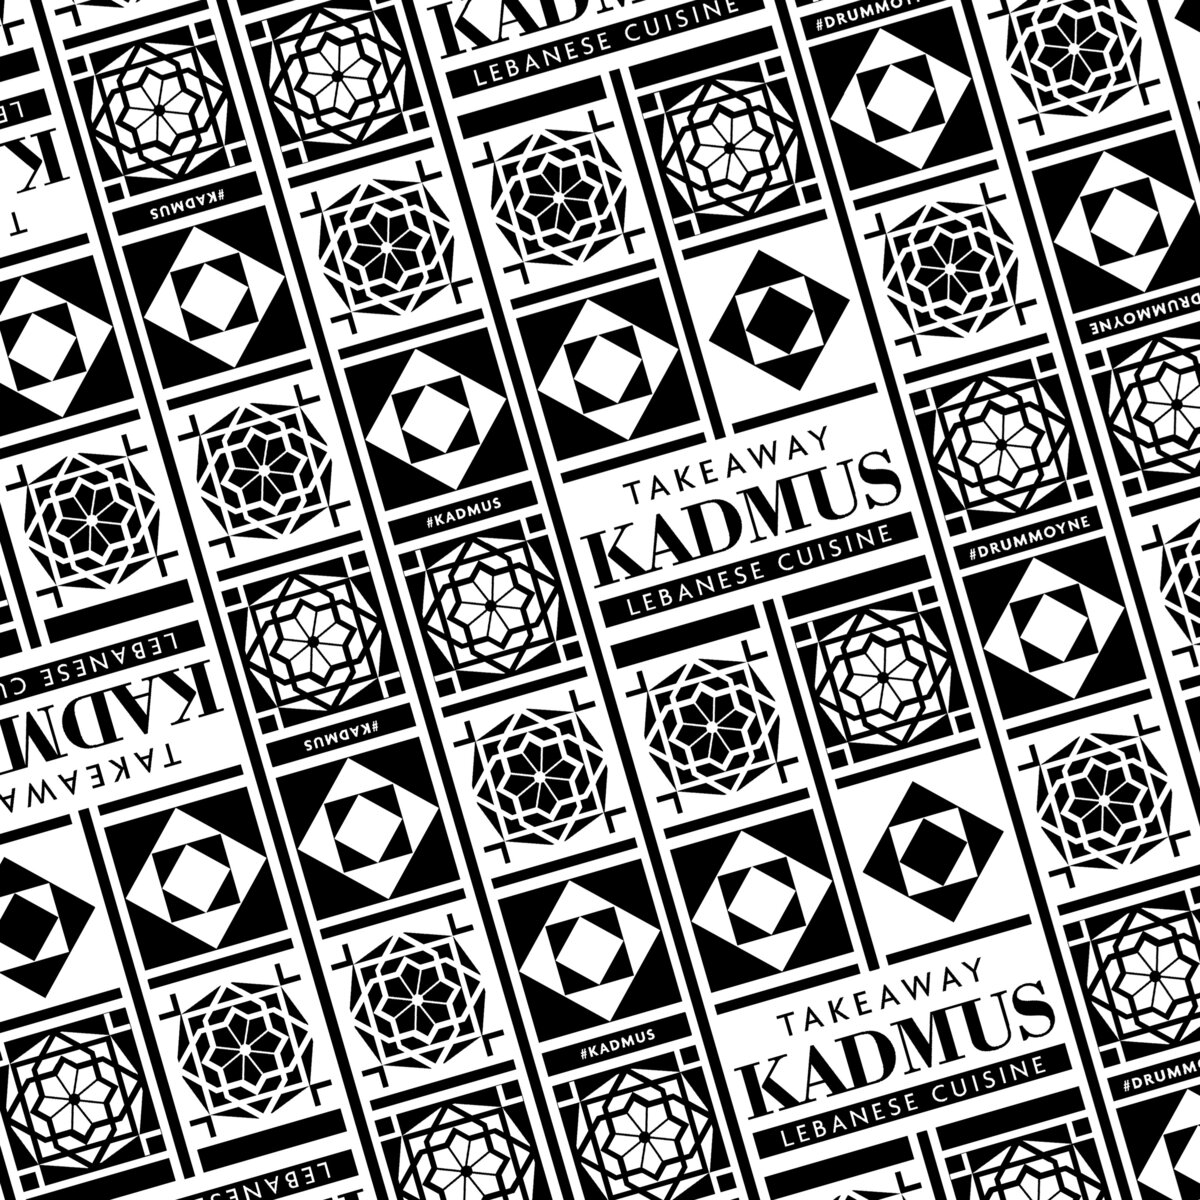 Kadmus (Logo)